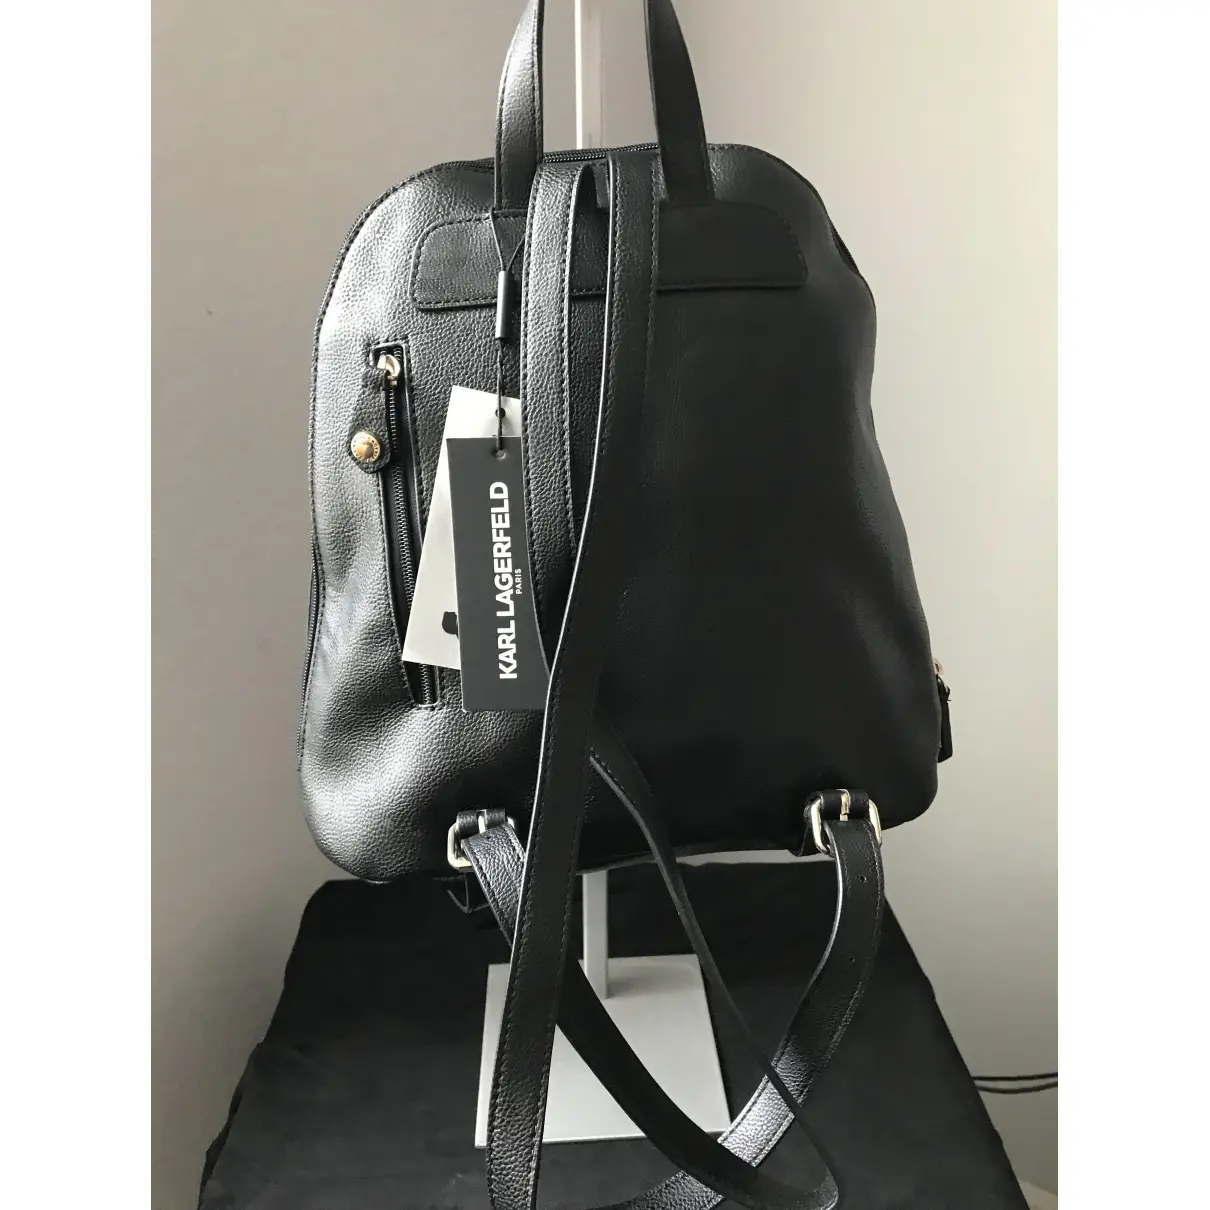 Buy Karl Lagerfeld Backpack online